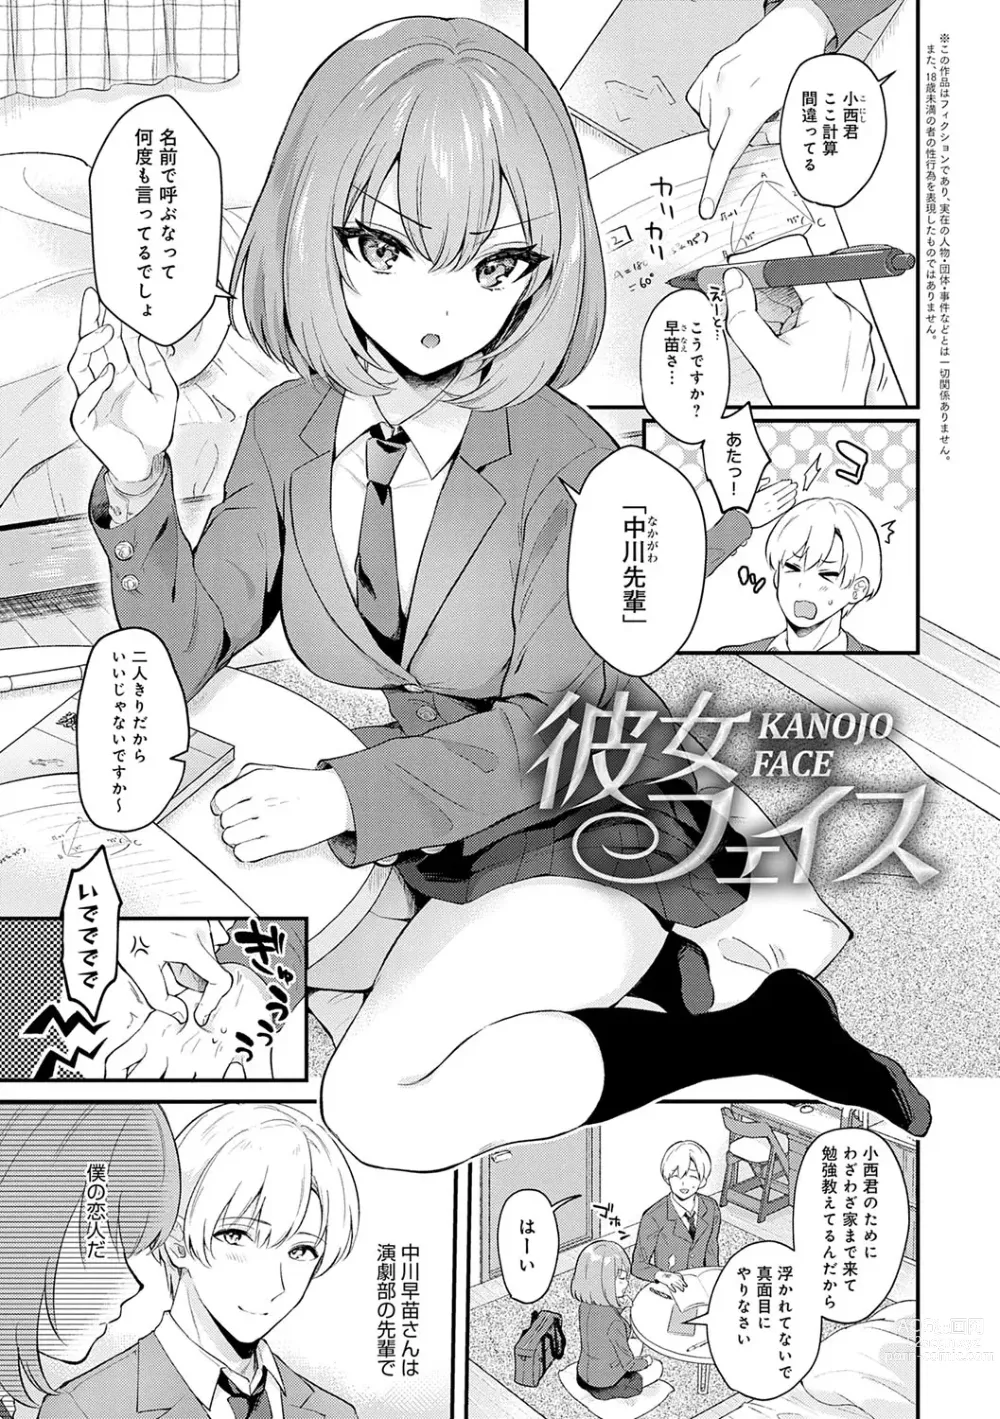 Page 4 of manga Kanojo Face